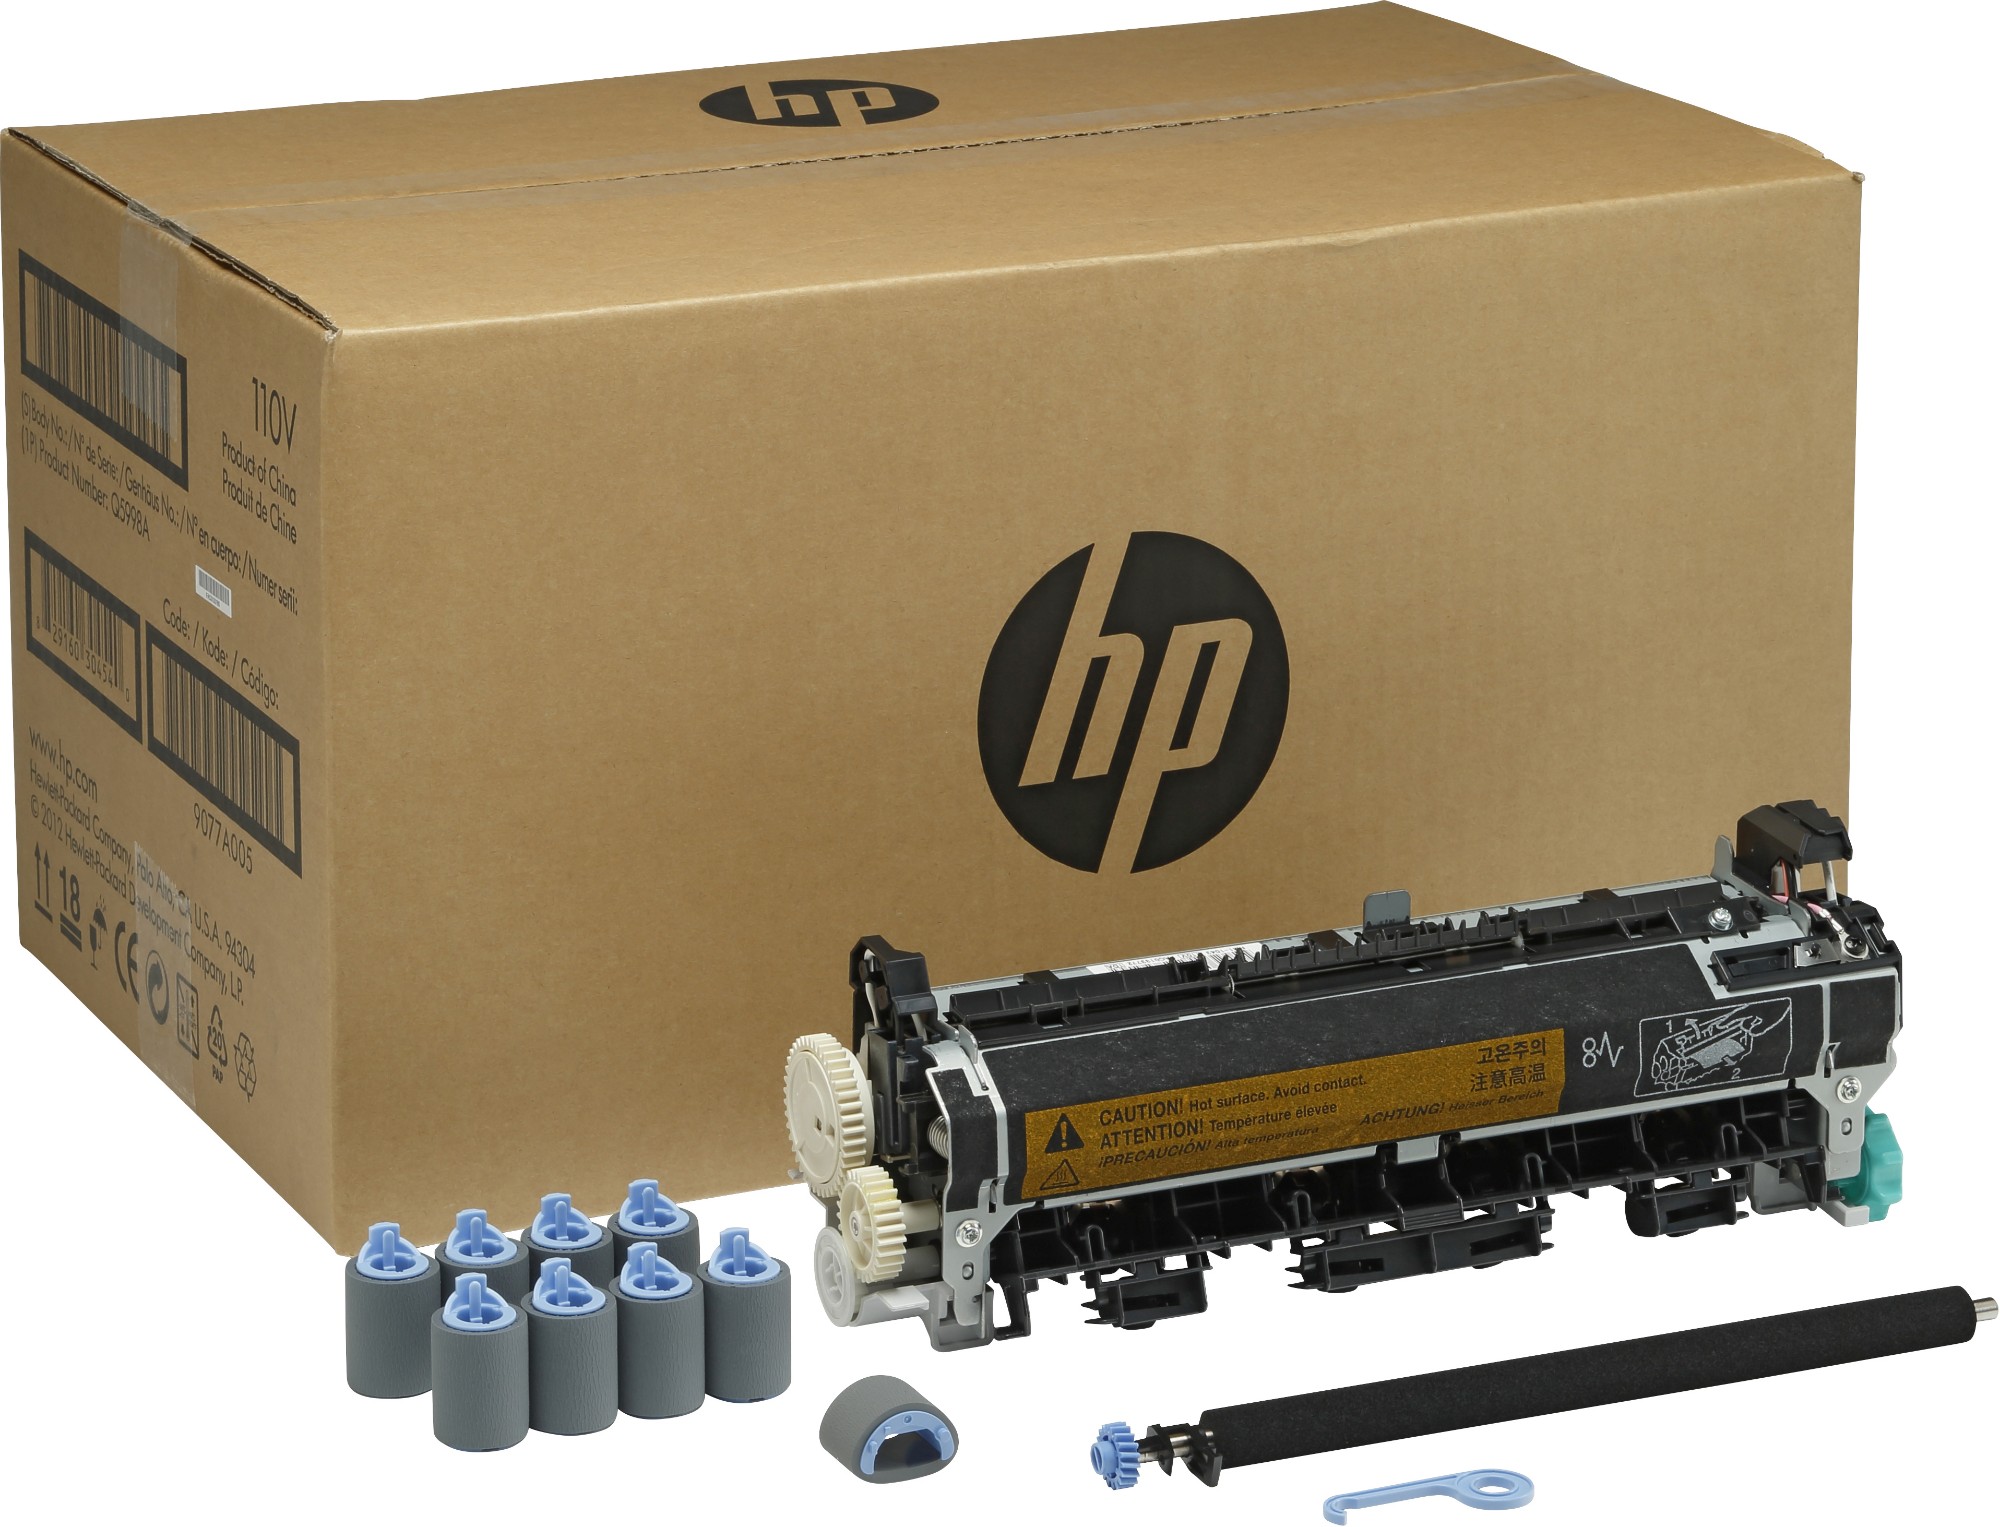 HP Q5999A Maintenance-kit 230V, 225K pages for HP LaserJet 4345